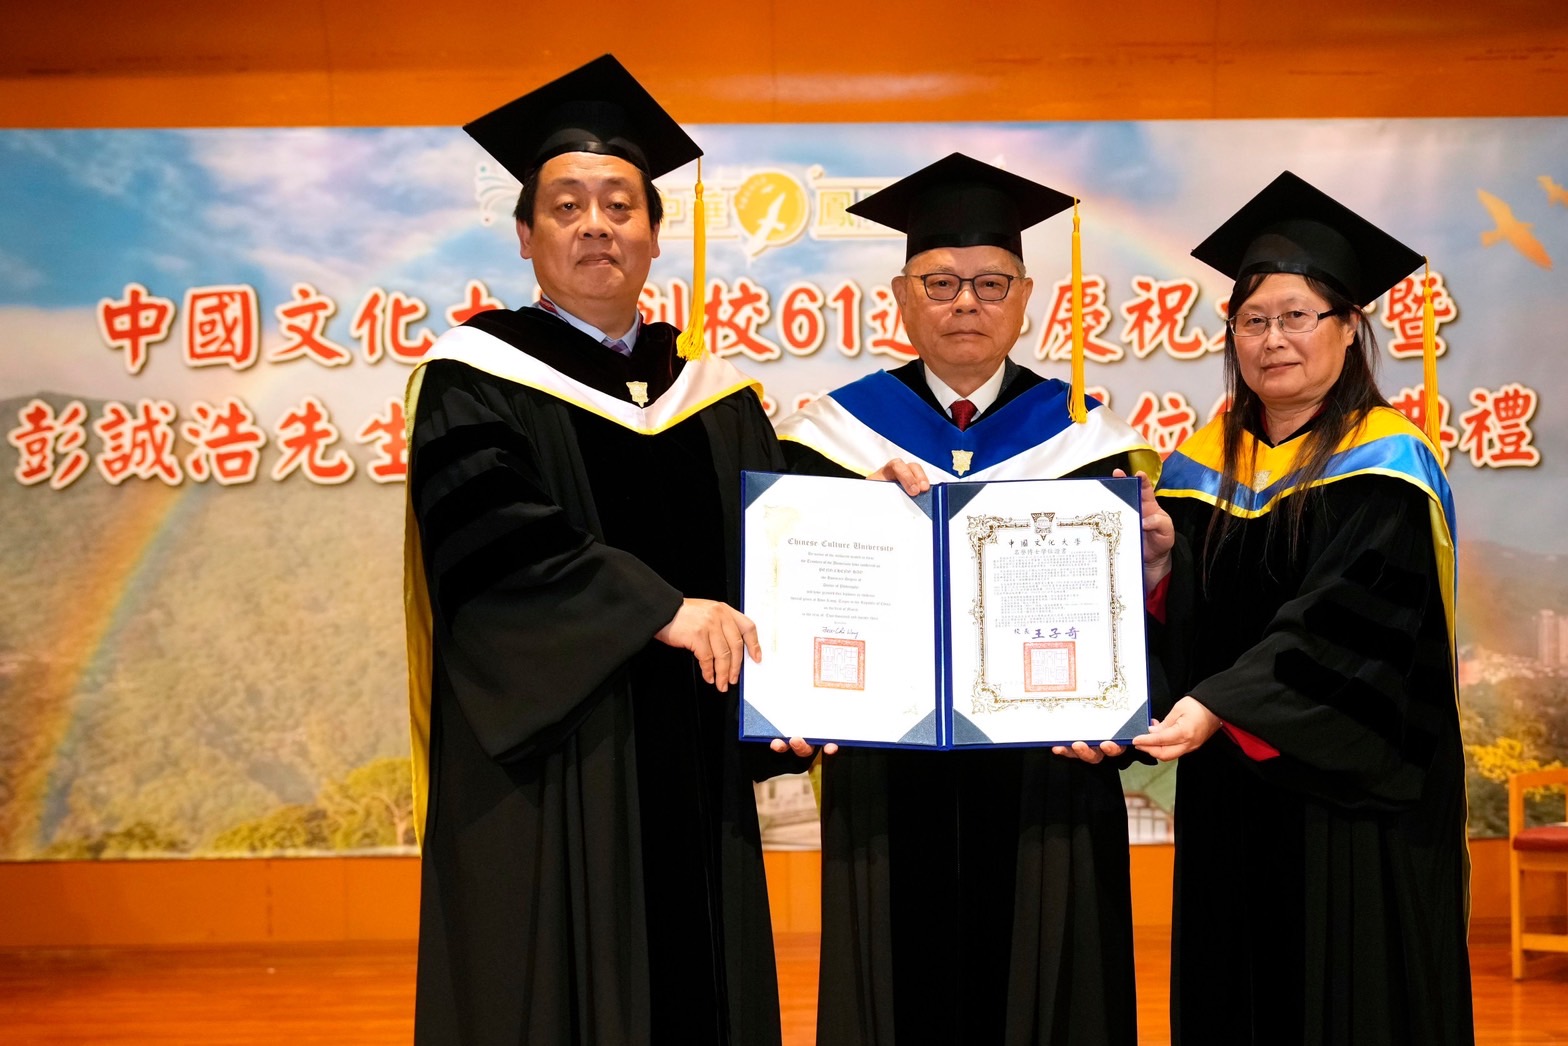 【有影】文化大學喜迎61校慶  棒球教父彭誠浩獲頒名譽博士